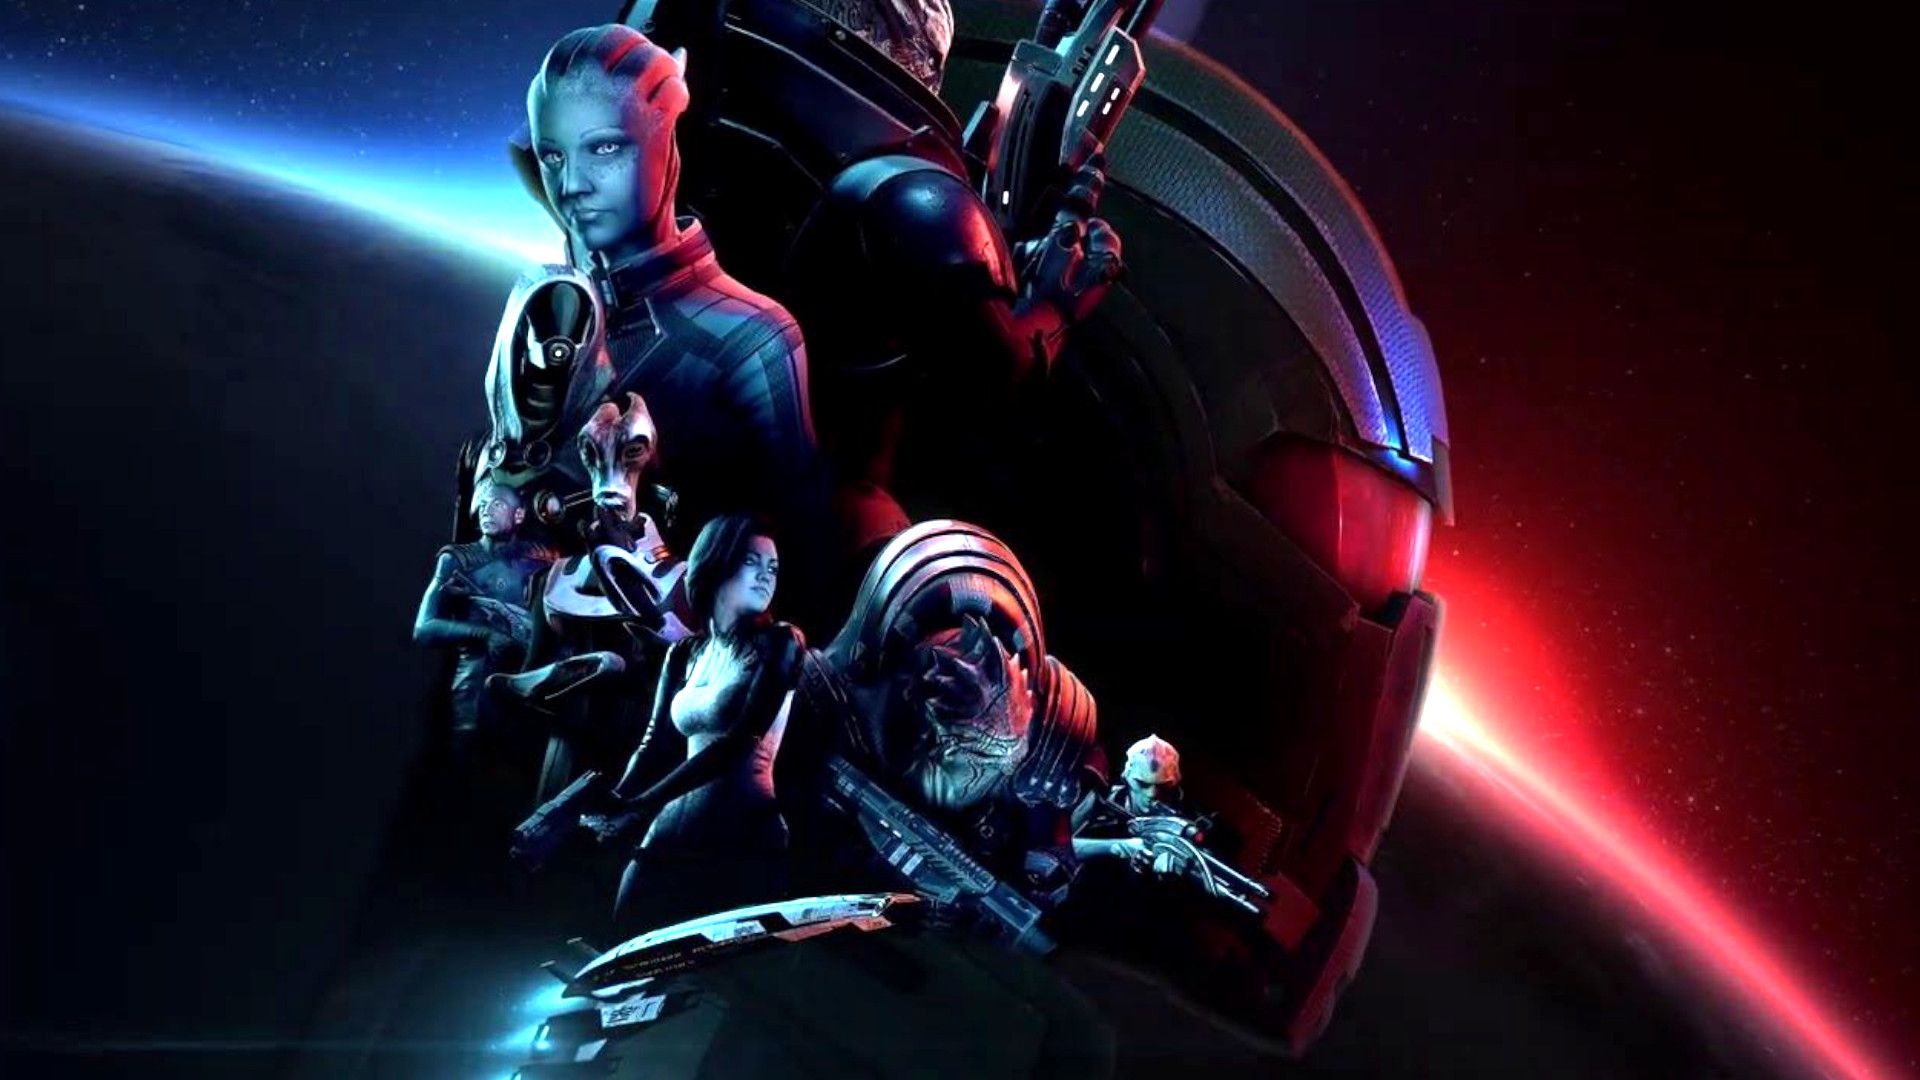 Mass Effect Legendary Edition Wallpapers Wallpaper Cave 